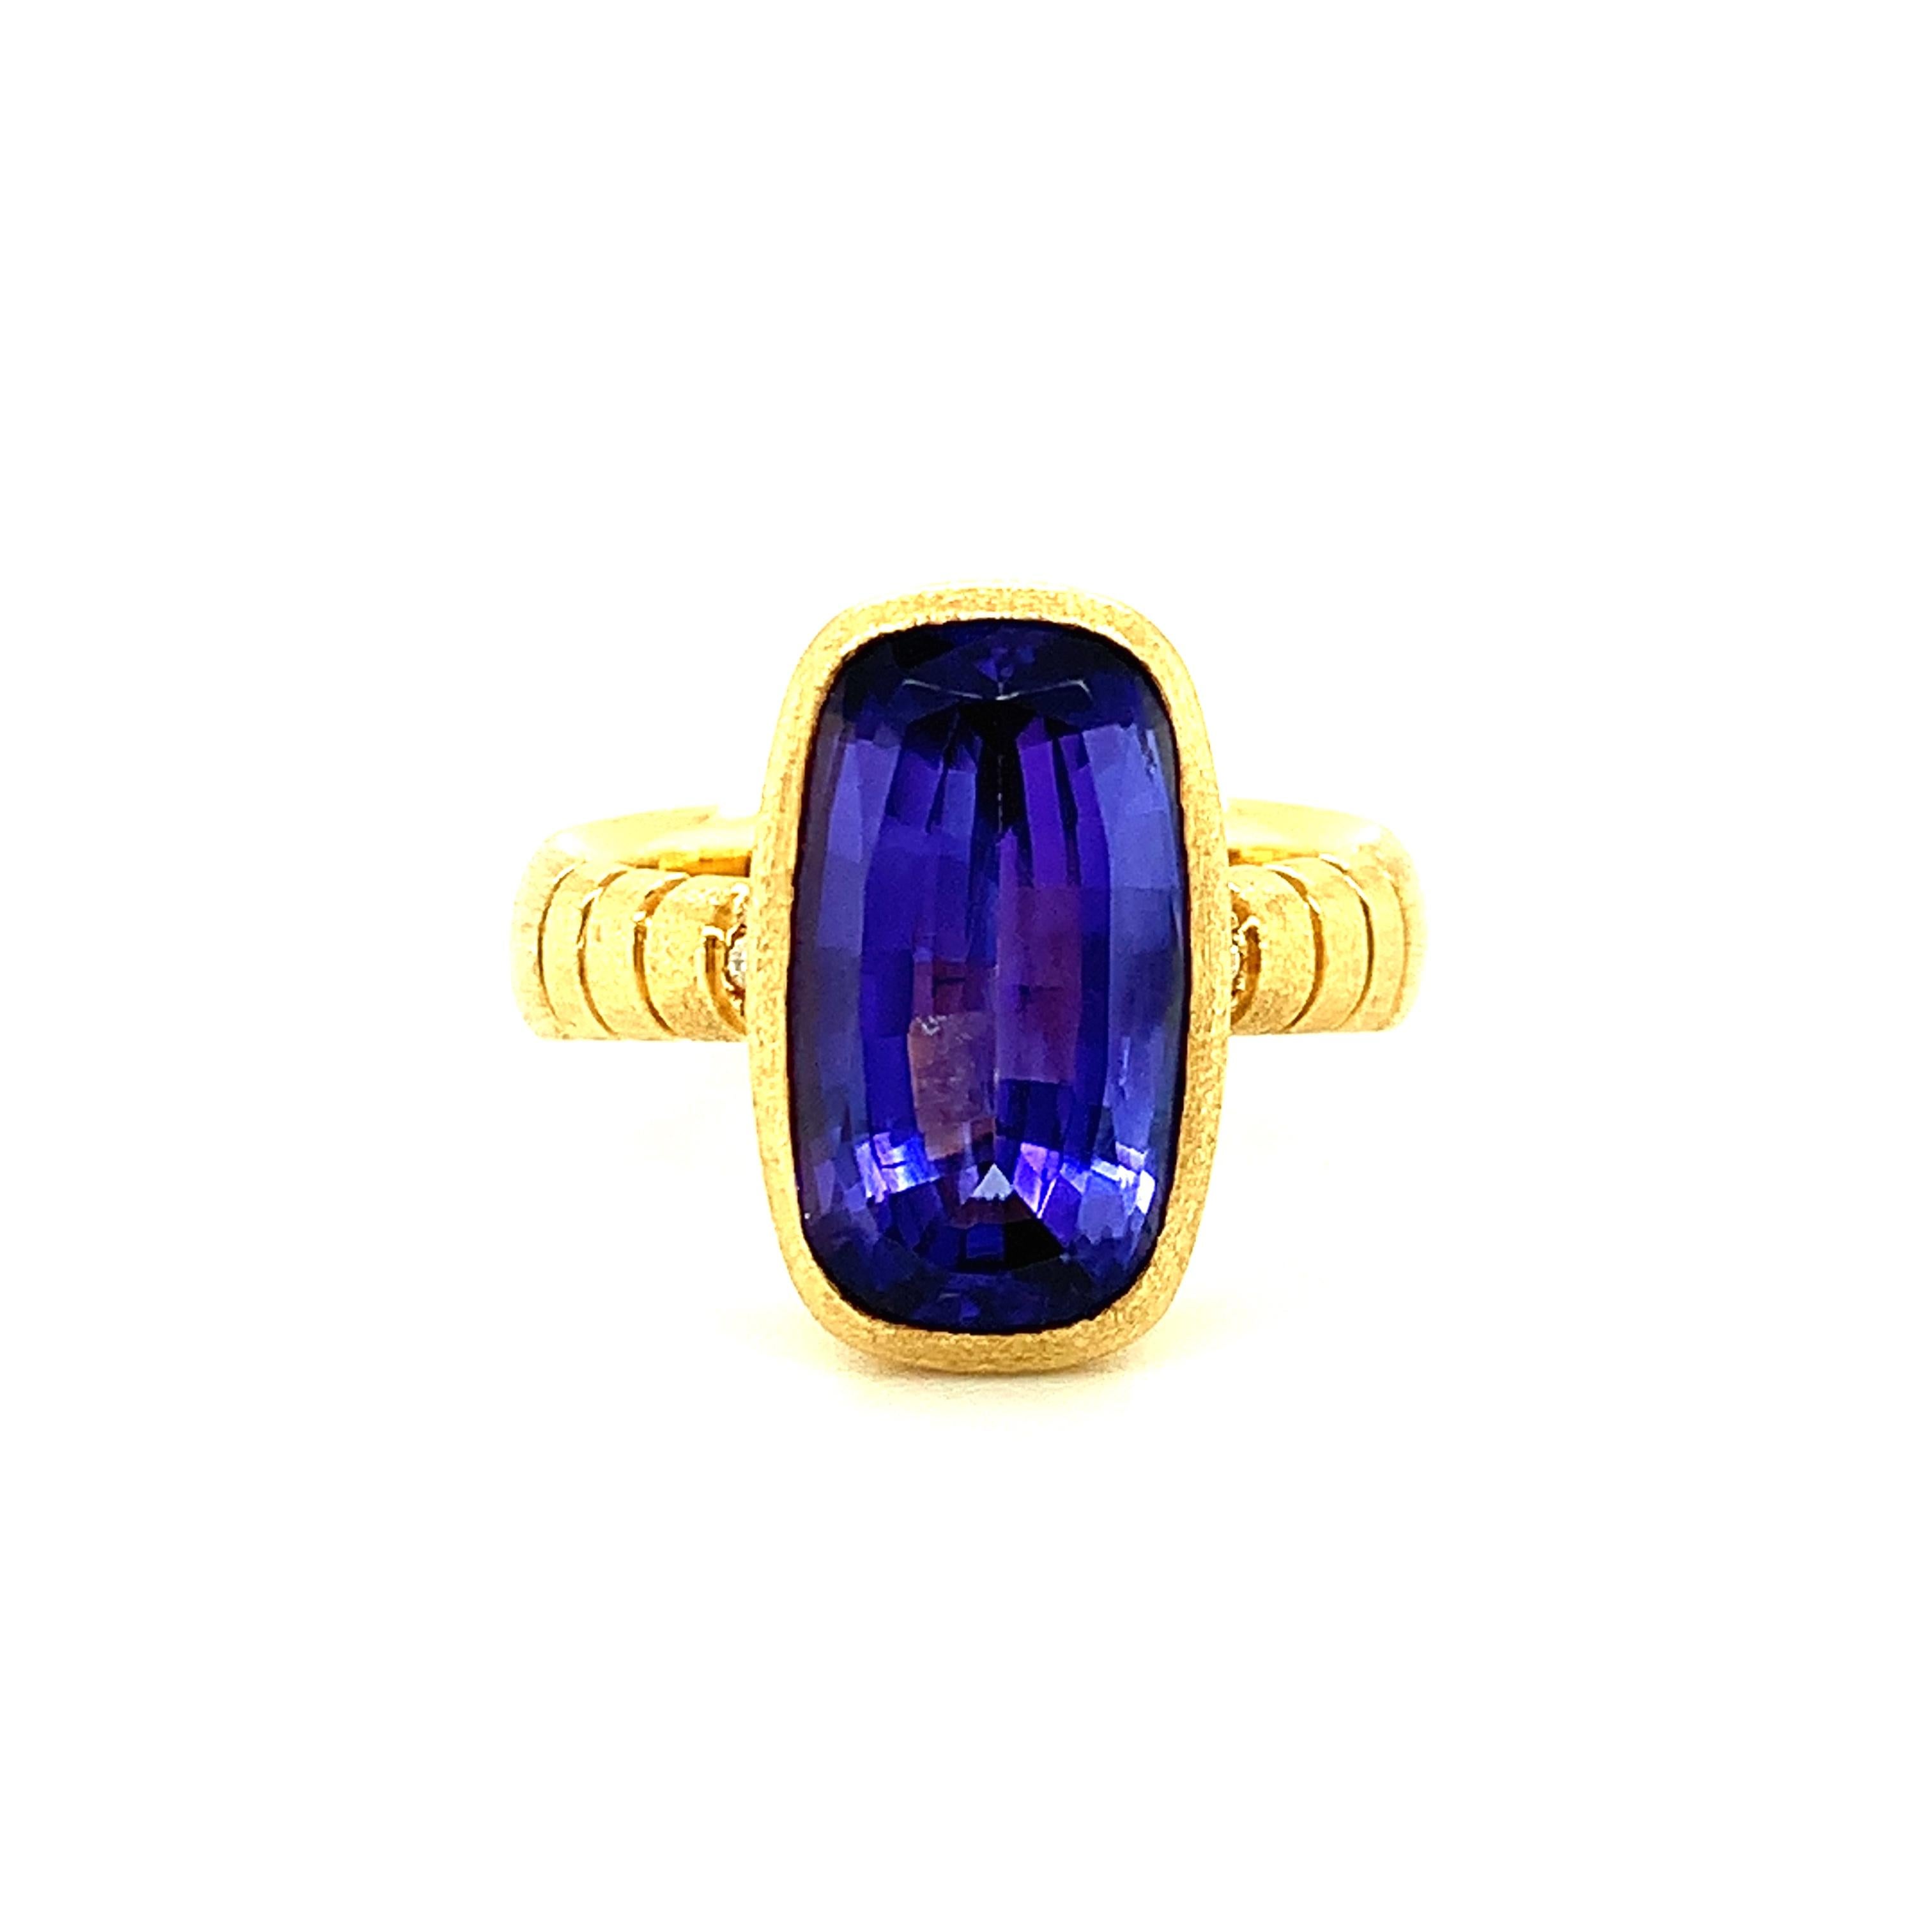 Dieser einzigartige Ring zeigt die wunderschöne, längliche Form dieses farbenprächtigen Tansanits! Der 6,09 Karat schwere Tansanit hat eine atemberaubende bläulich-violette Farbe mit ungewöhnlich starker Sättigung. Dieser Ring wurde in Handarbeit